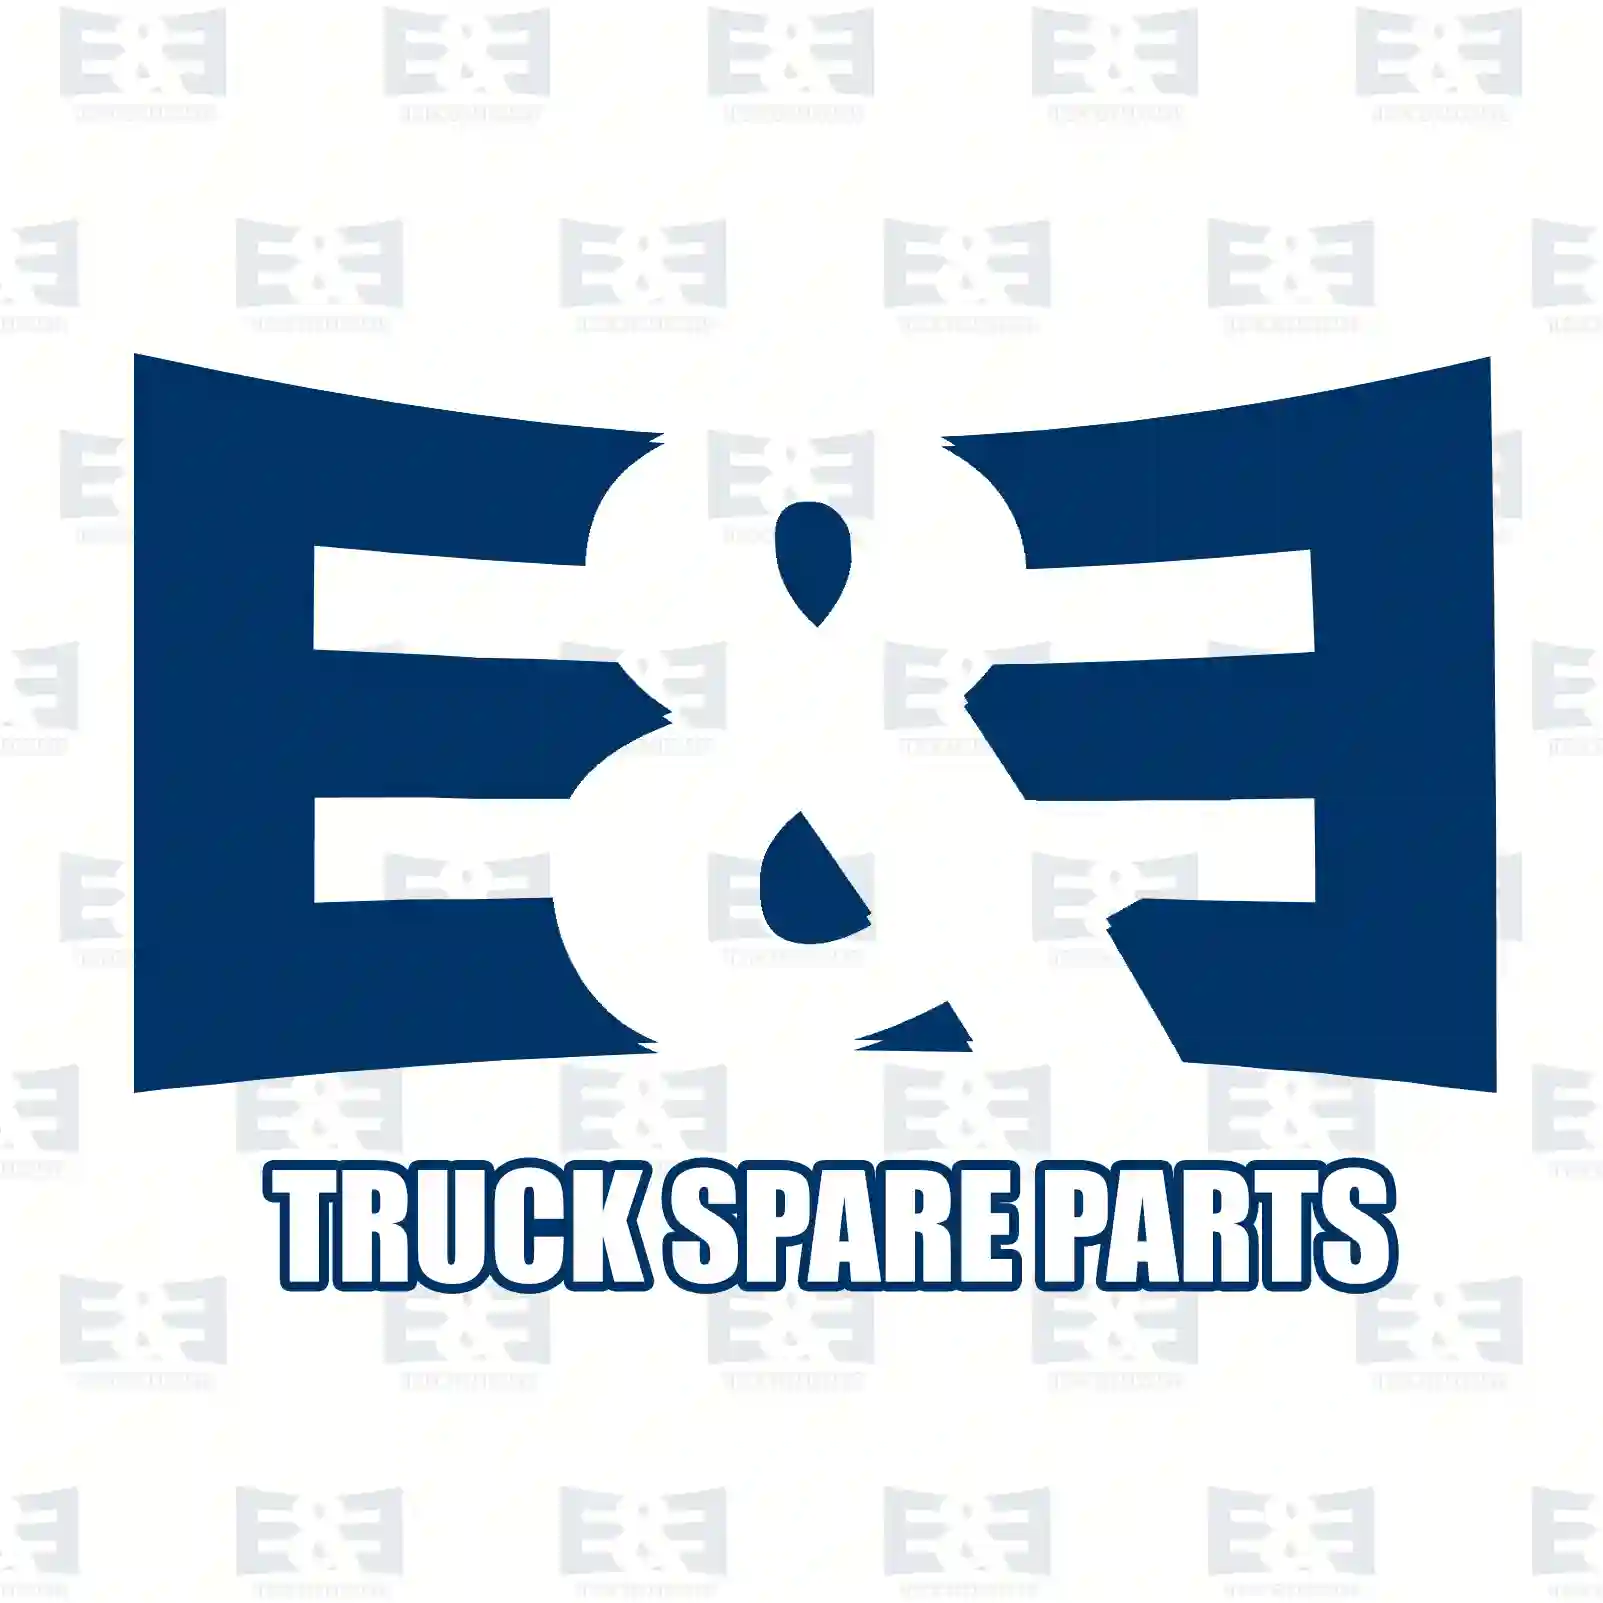 Oil cooler, 2E2209178, 0001802765, 0001806765, ZG01673-0008 ||  2E2209178 E&E Truck Spare Parts | Truck Spare Parts, Auotomotive Spare Parts Oil cooler, 2E2209178, 0001802765, 0001806765, ZG01673-0008 ||  2E2209178 E&E Truck Spare Parts | Truck Spare Parts, Auotomotive Spare Parts